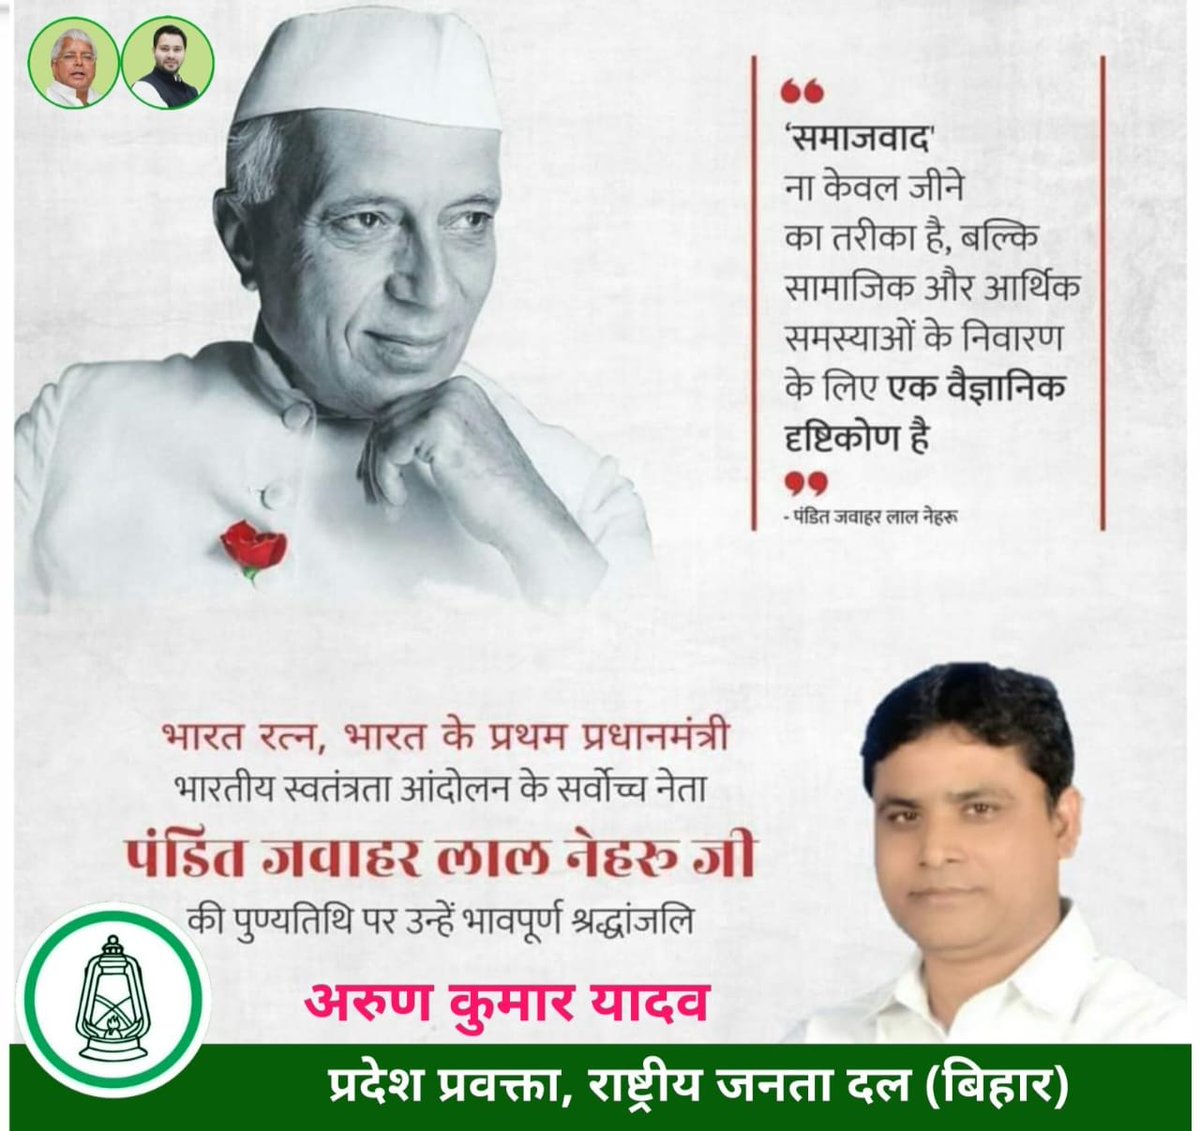 भारत के प्रथम प्रधानमंत्री एवं 'भारत रत्न' पंडित जवाहरलाल नेहरू जी के पुण्यतिथि पर उन्हें भावपूर्ण श्रद्धांजलि व शत्-शत् नमन। #JawaharlalNehru